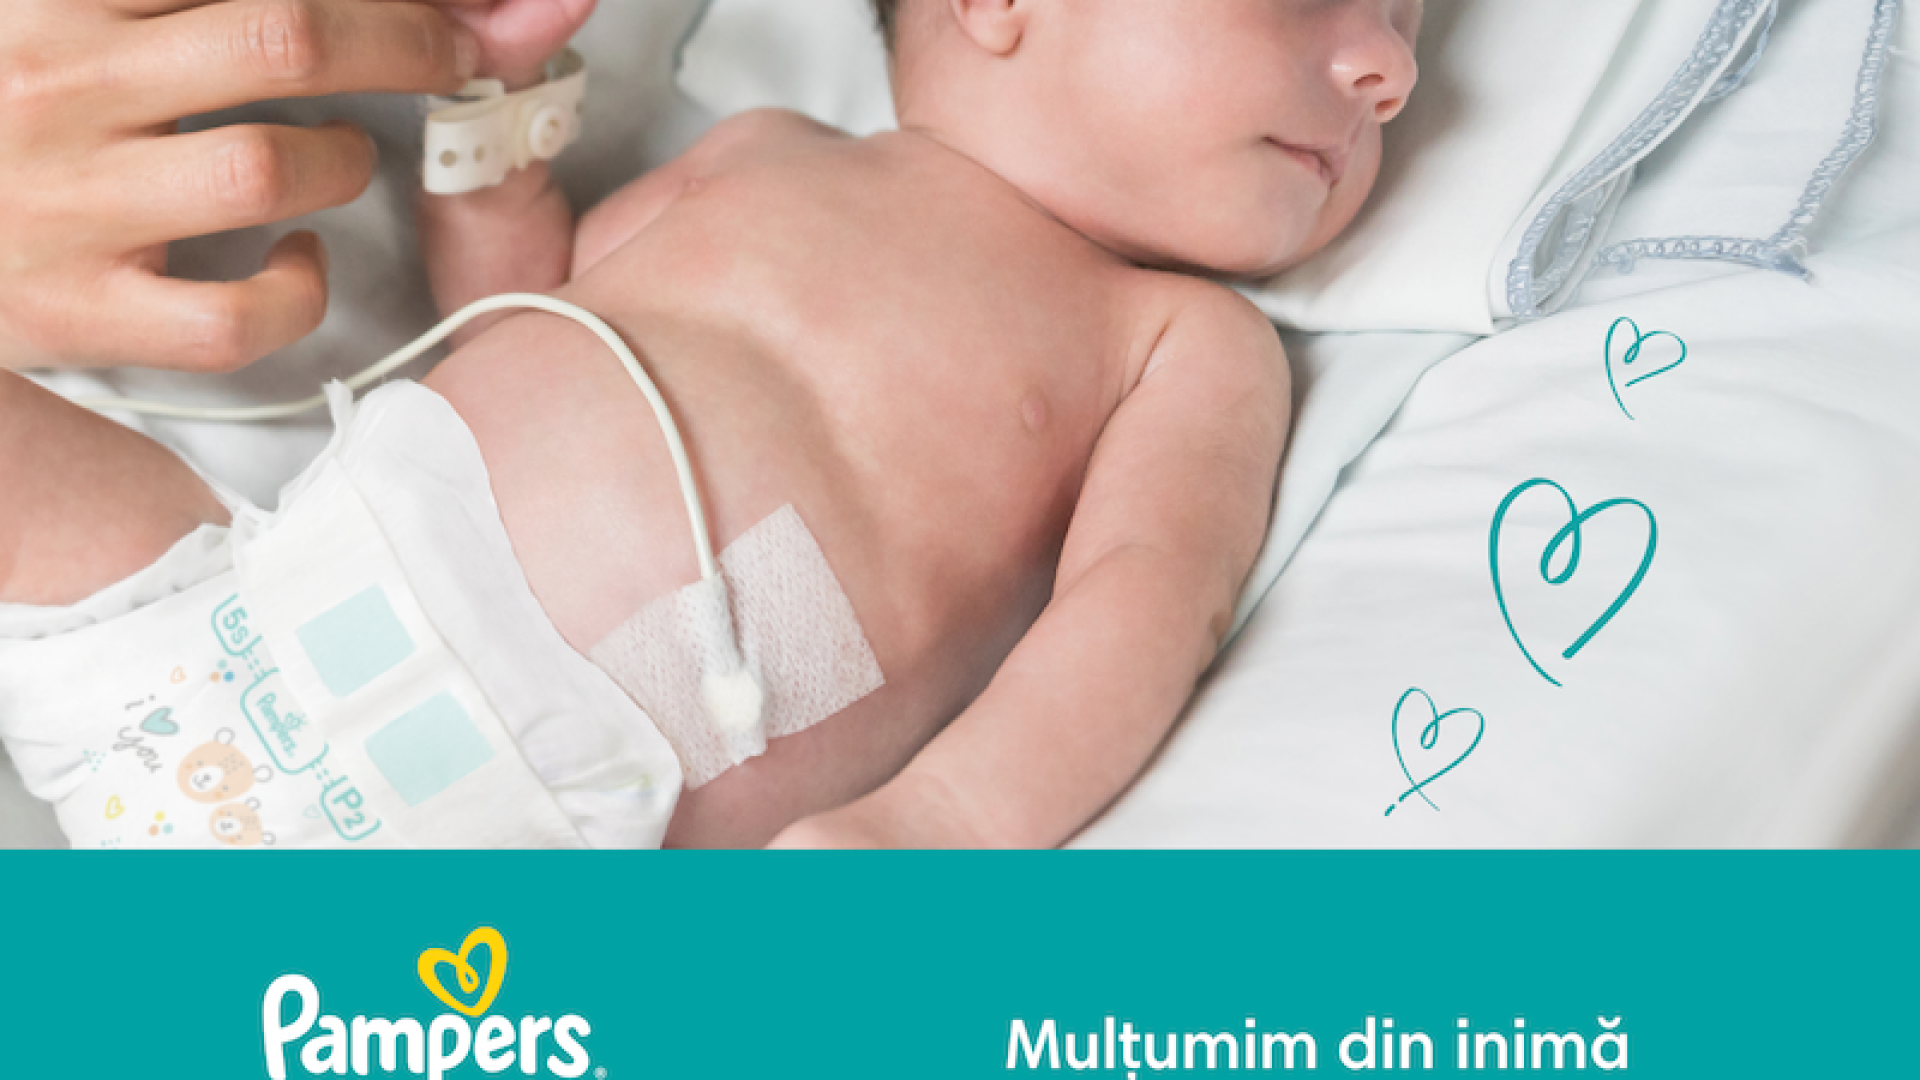 (P) Pampers continuă să fie alături de bebelușii născuți prematur prin donația de scutece Pampers special